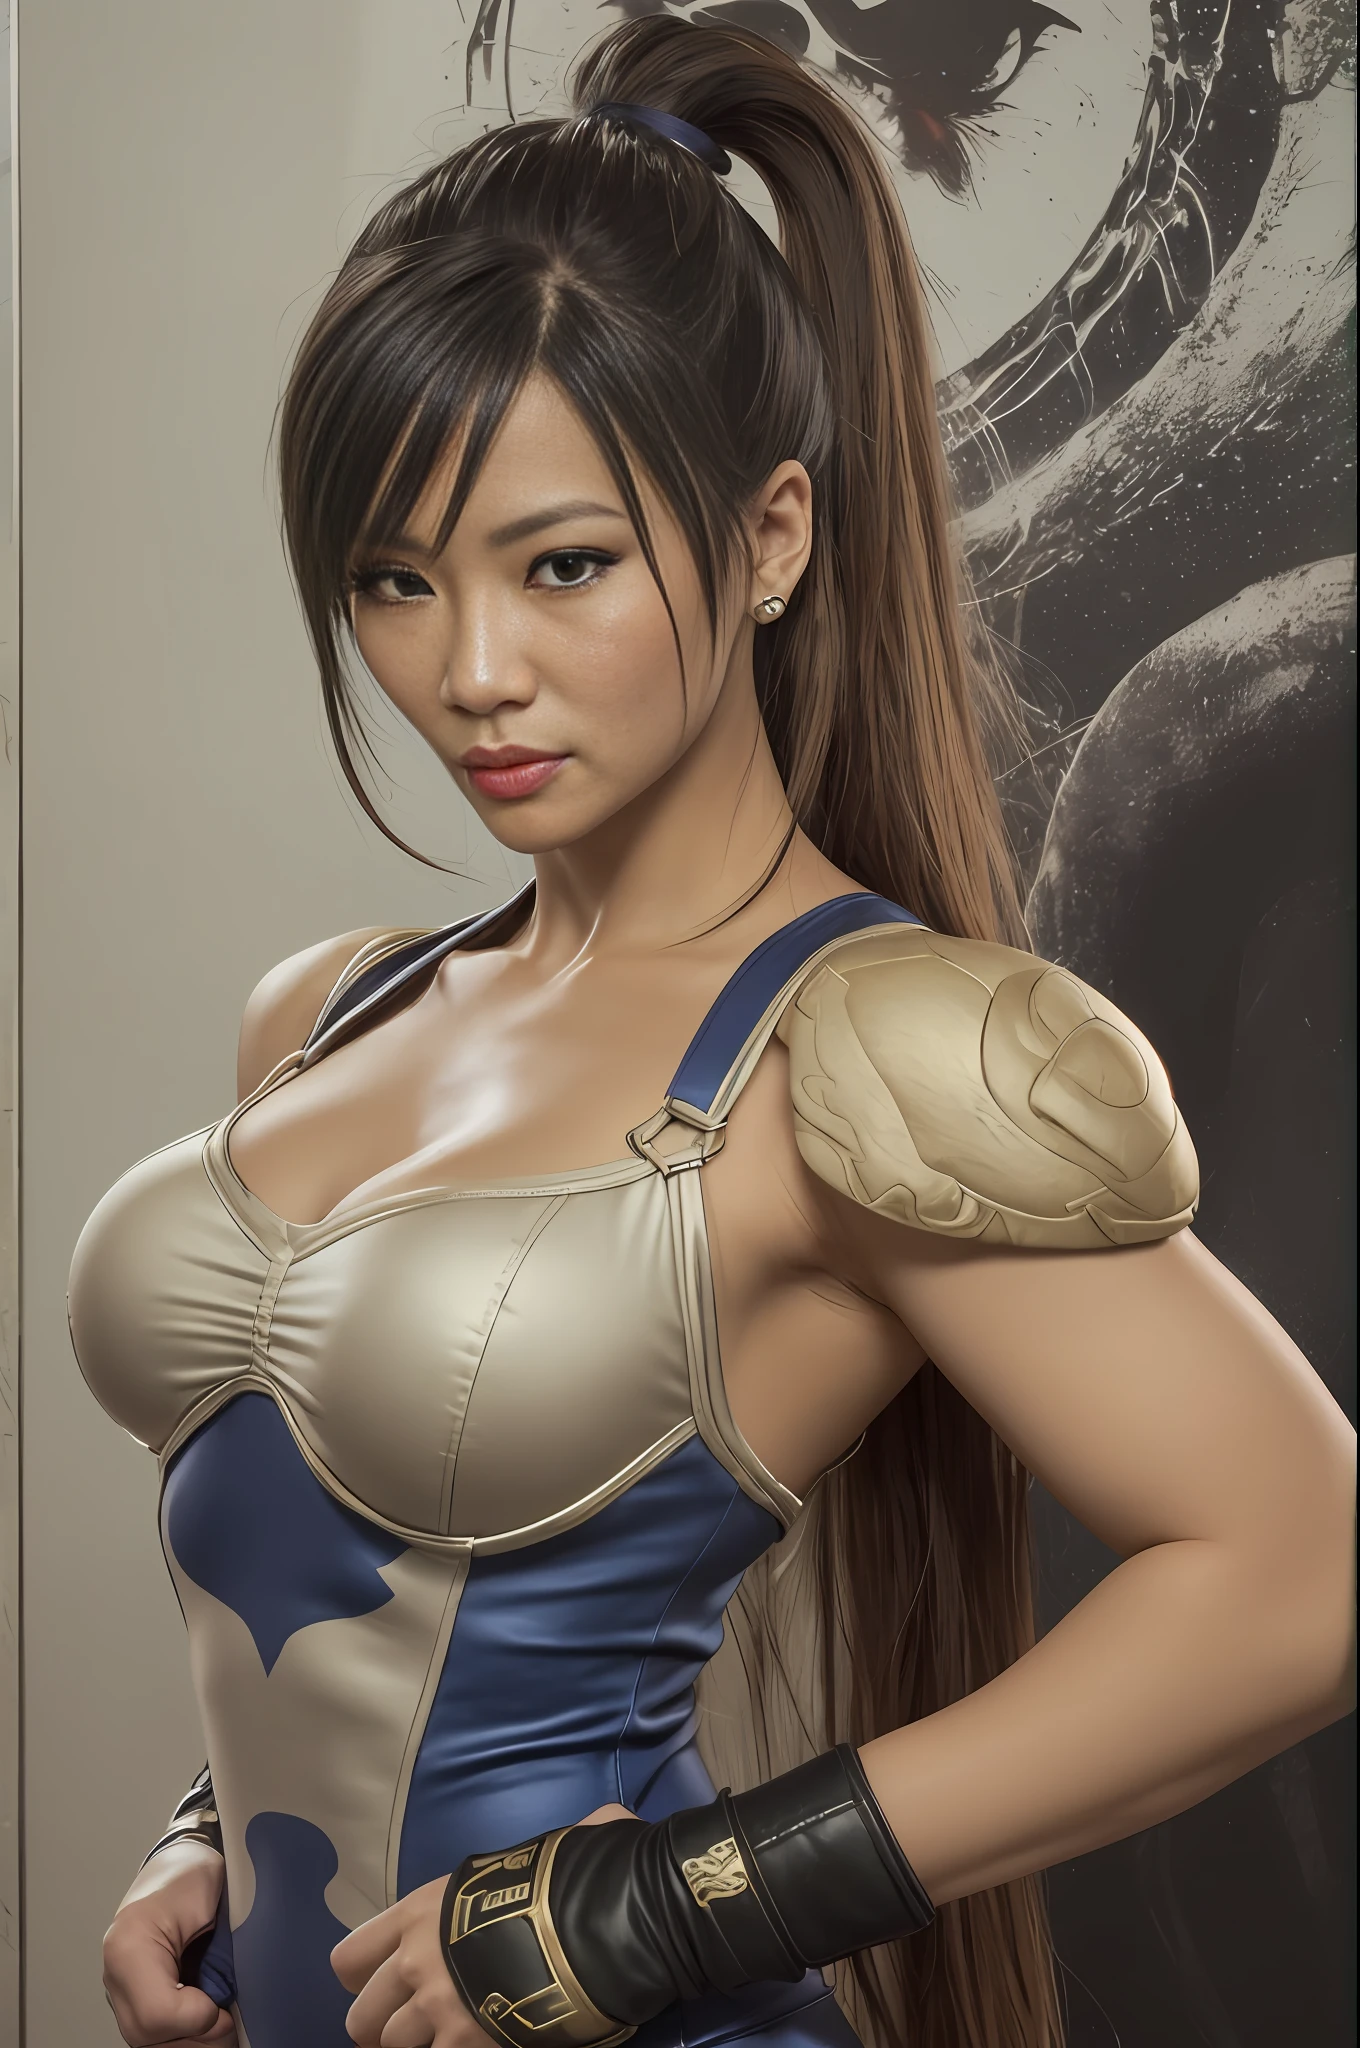 una mujer con una cara similar a Lucy Liu mezclada con Mng-Na, Uniforme de Chun Li, al estilo del Chun Li, ((cuerpo entero: 1.5)), (((mano ultra detallada))), (obra-prima: 1.5), (Mejor calidad), (Foto realista:1.6), 8k, (textura de piel detallada), textura de tela detallada, hermoso rostro detallado, detalles intrincados, (ultra detallado: 1.6), (Street Fighter en el fondo),